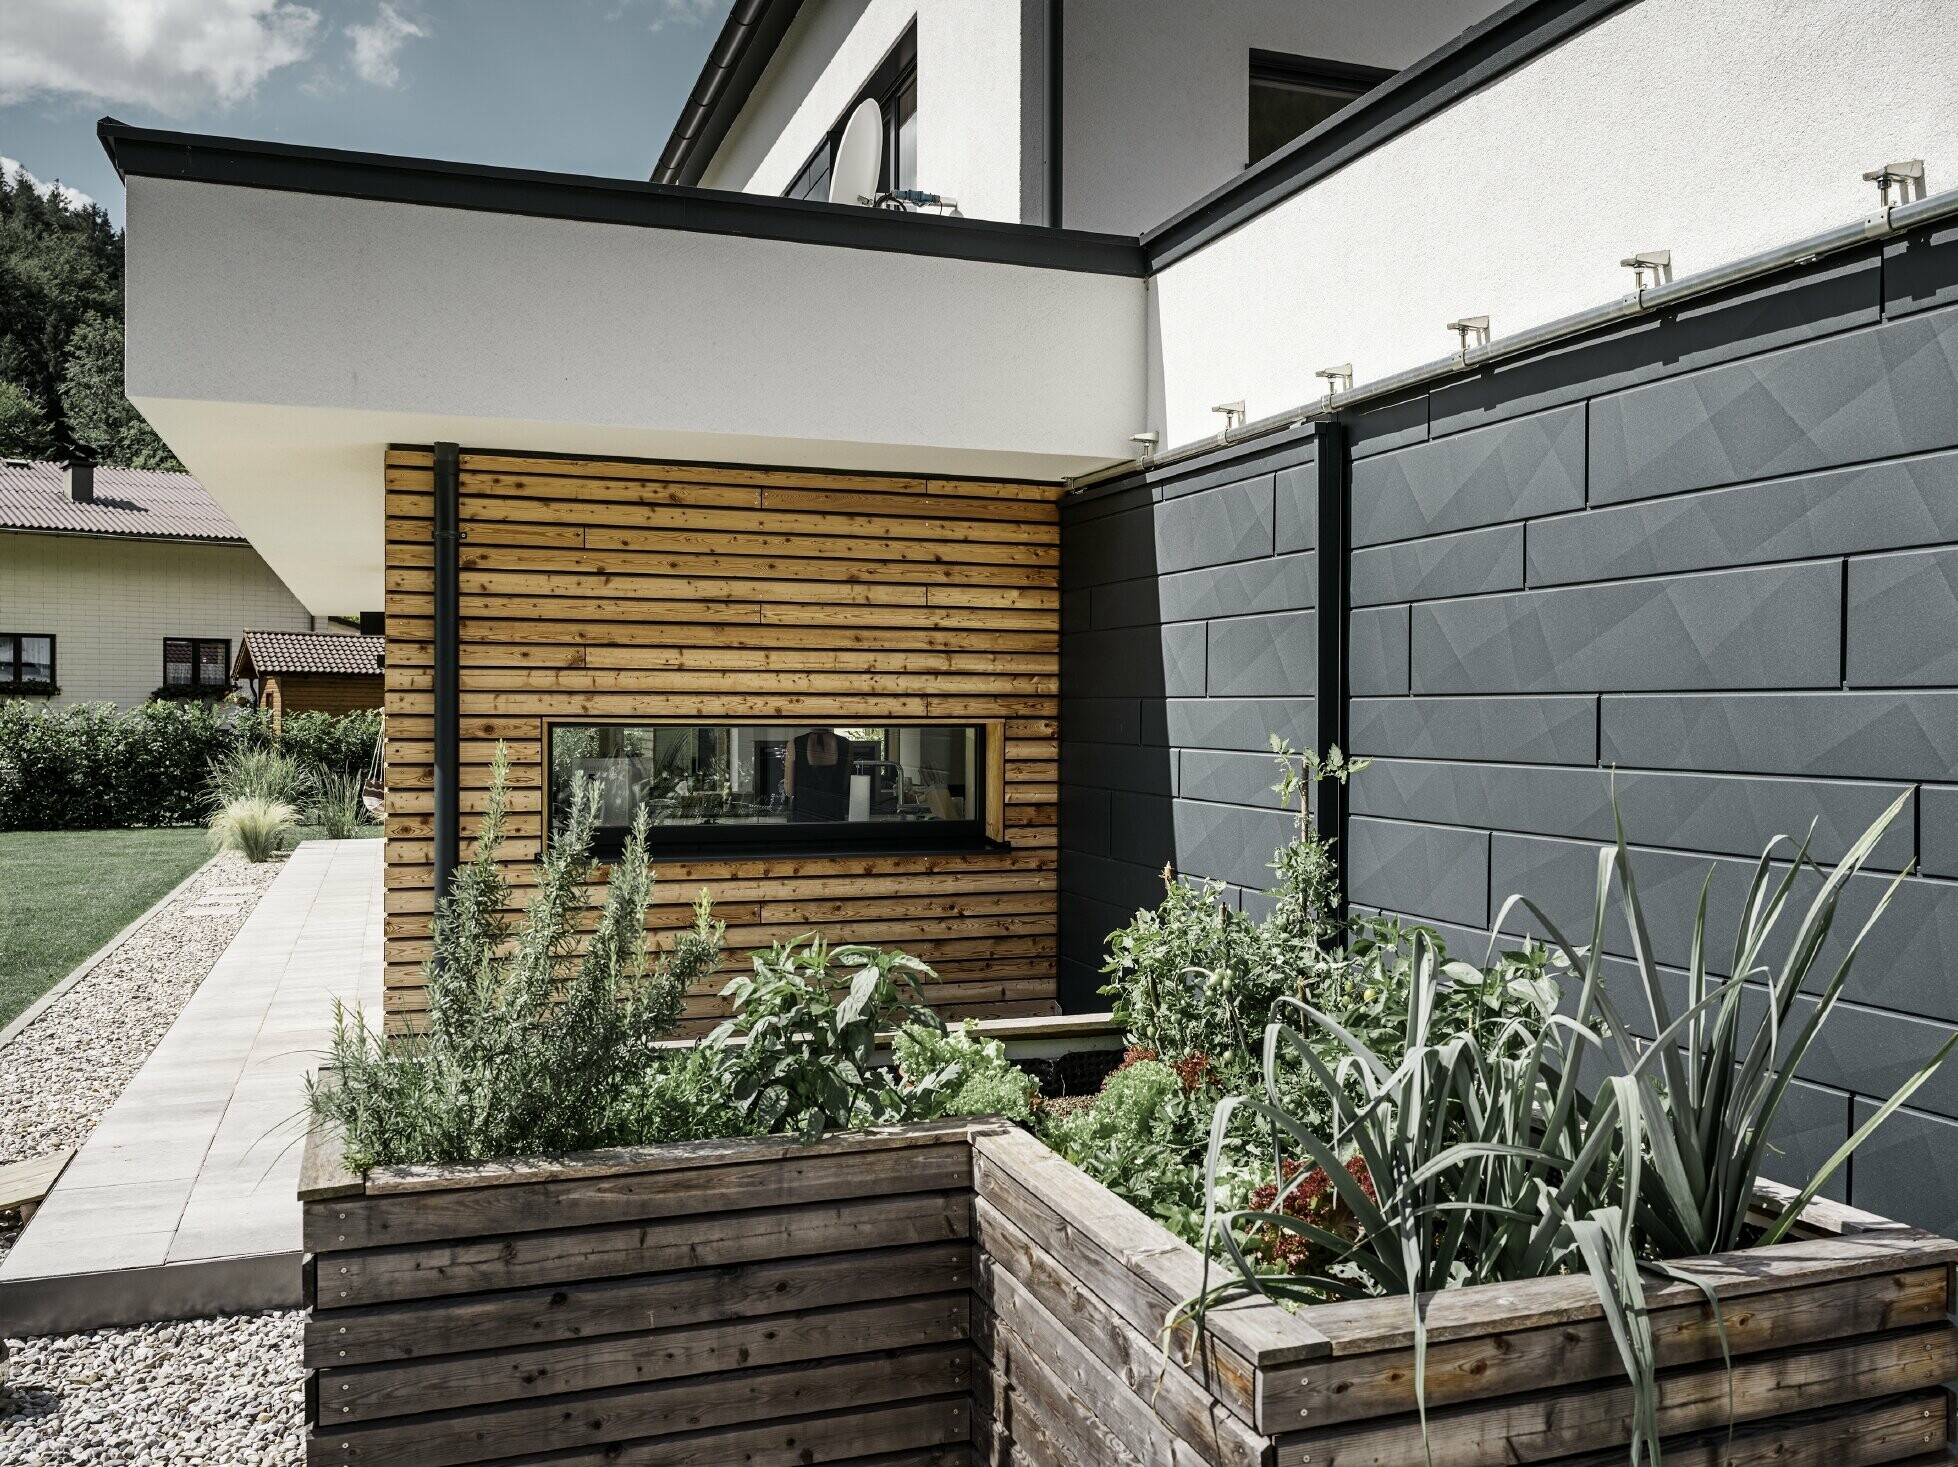 Tento obrázok ukazuje detailný záber rodinného domu so zameraním na fasádny obklad s PREFA Siding.X vo farbe P.10 Antracit. Tmavé fasádne panely s výrazným zvrásneným vzhľadom poskytujú príťažlivý vizuálny kontrast k živým, drevom obloženým plochám a okolitým zeleným priestranstvám. Vyvýšené záhony vysadené rôznymi rastlinami a kríkmi sú umiestnené pred hliníkovou fasádou, čo podčiarkuje prirodzený a udržateľný vzhľad domu. Kombinácia moderných materiálov a začlenenie do záhradnej plochy sprostredkúva obraz súčasnej architektúry, ktorá harmonicky zapadá do svojho okolia.